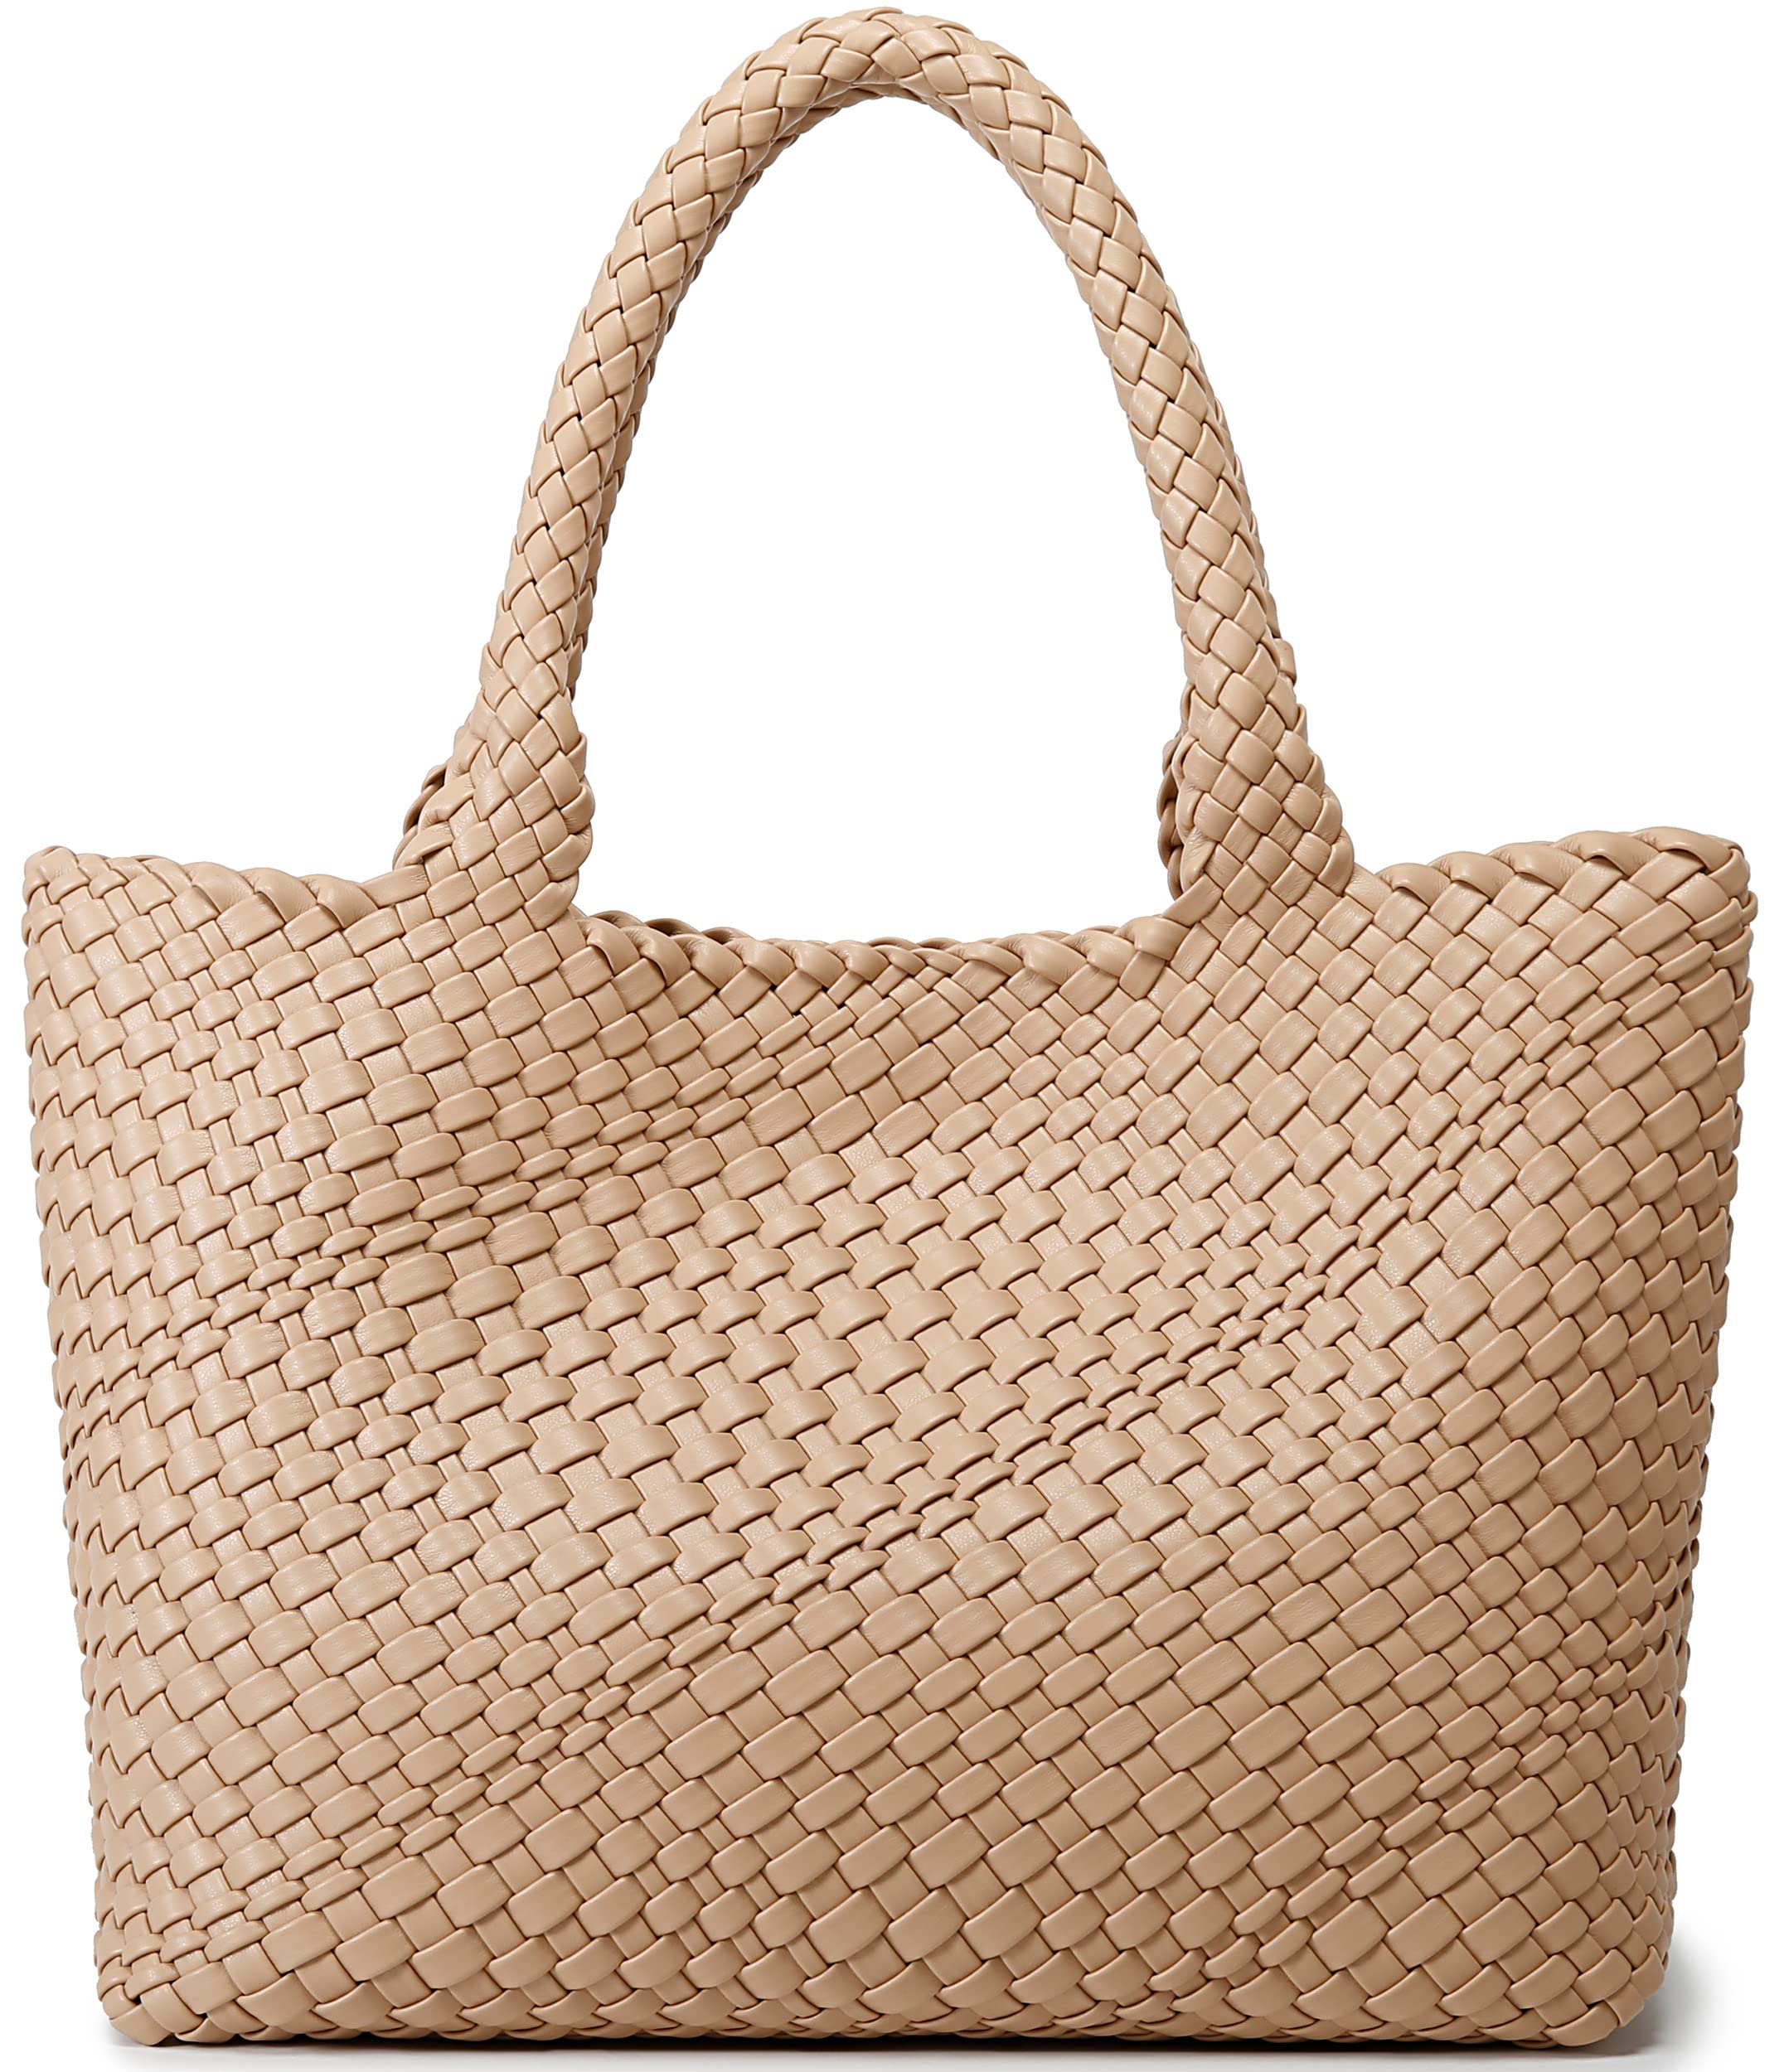 Woven Bag for Women, Fashion Top Handle Shoulder Bag Vegan Leather Shopper Bag Large Travel Tote Bag